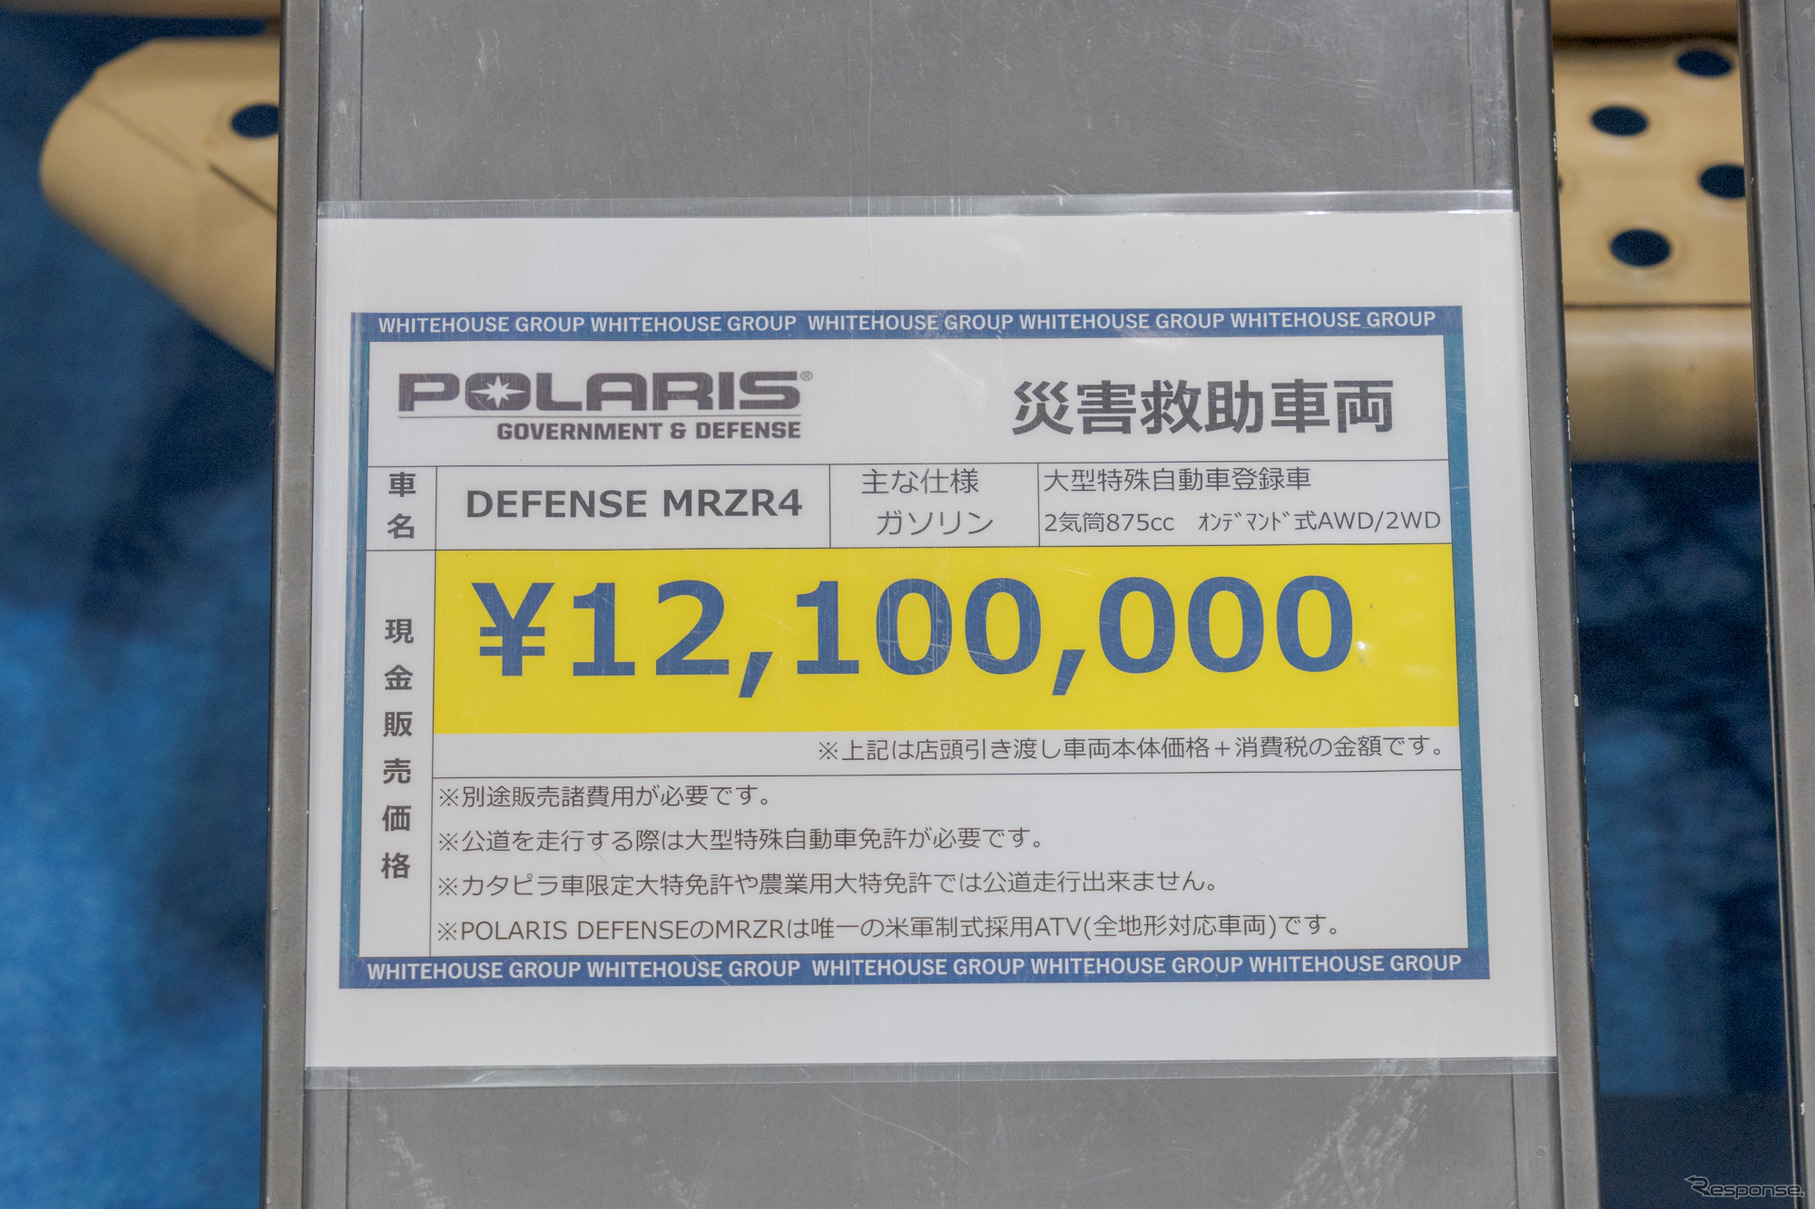 価格は1210万円だが、災害時に活躍できる車と考えると決して高い値段ではないのかもしれない。